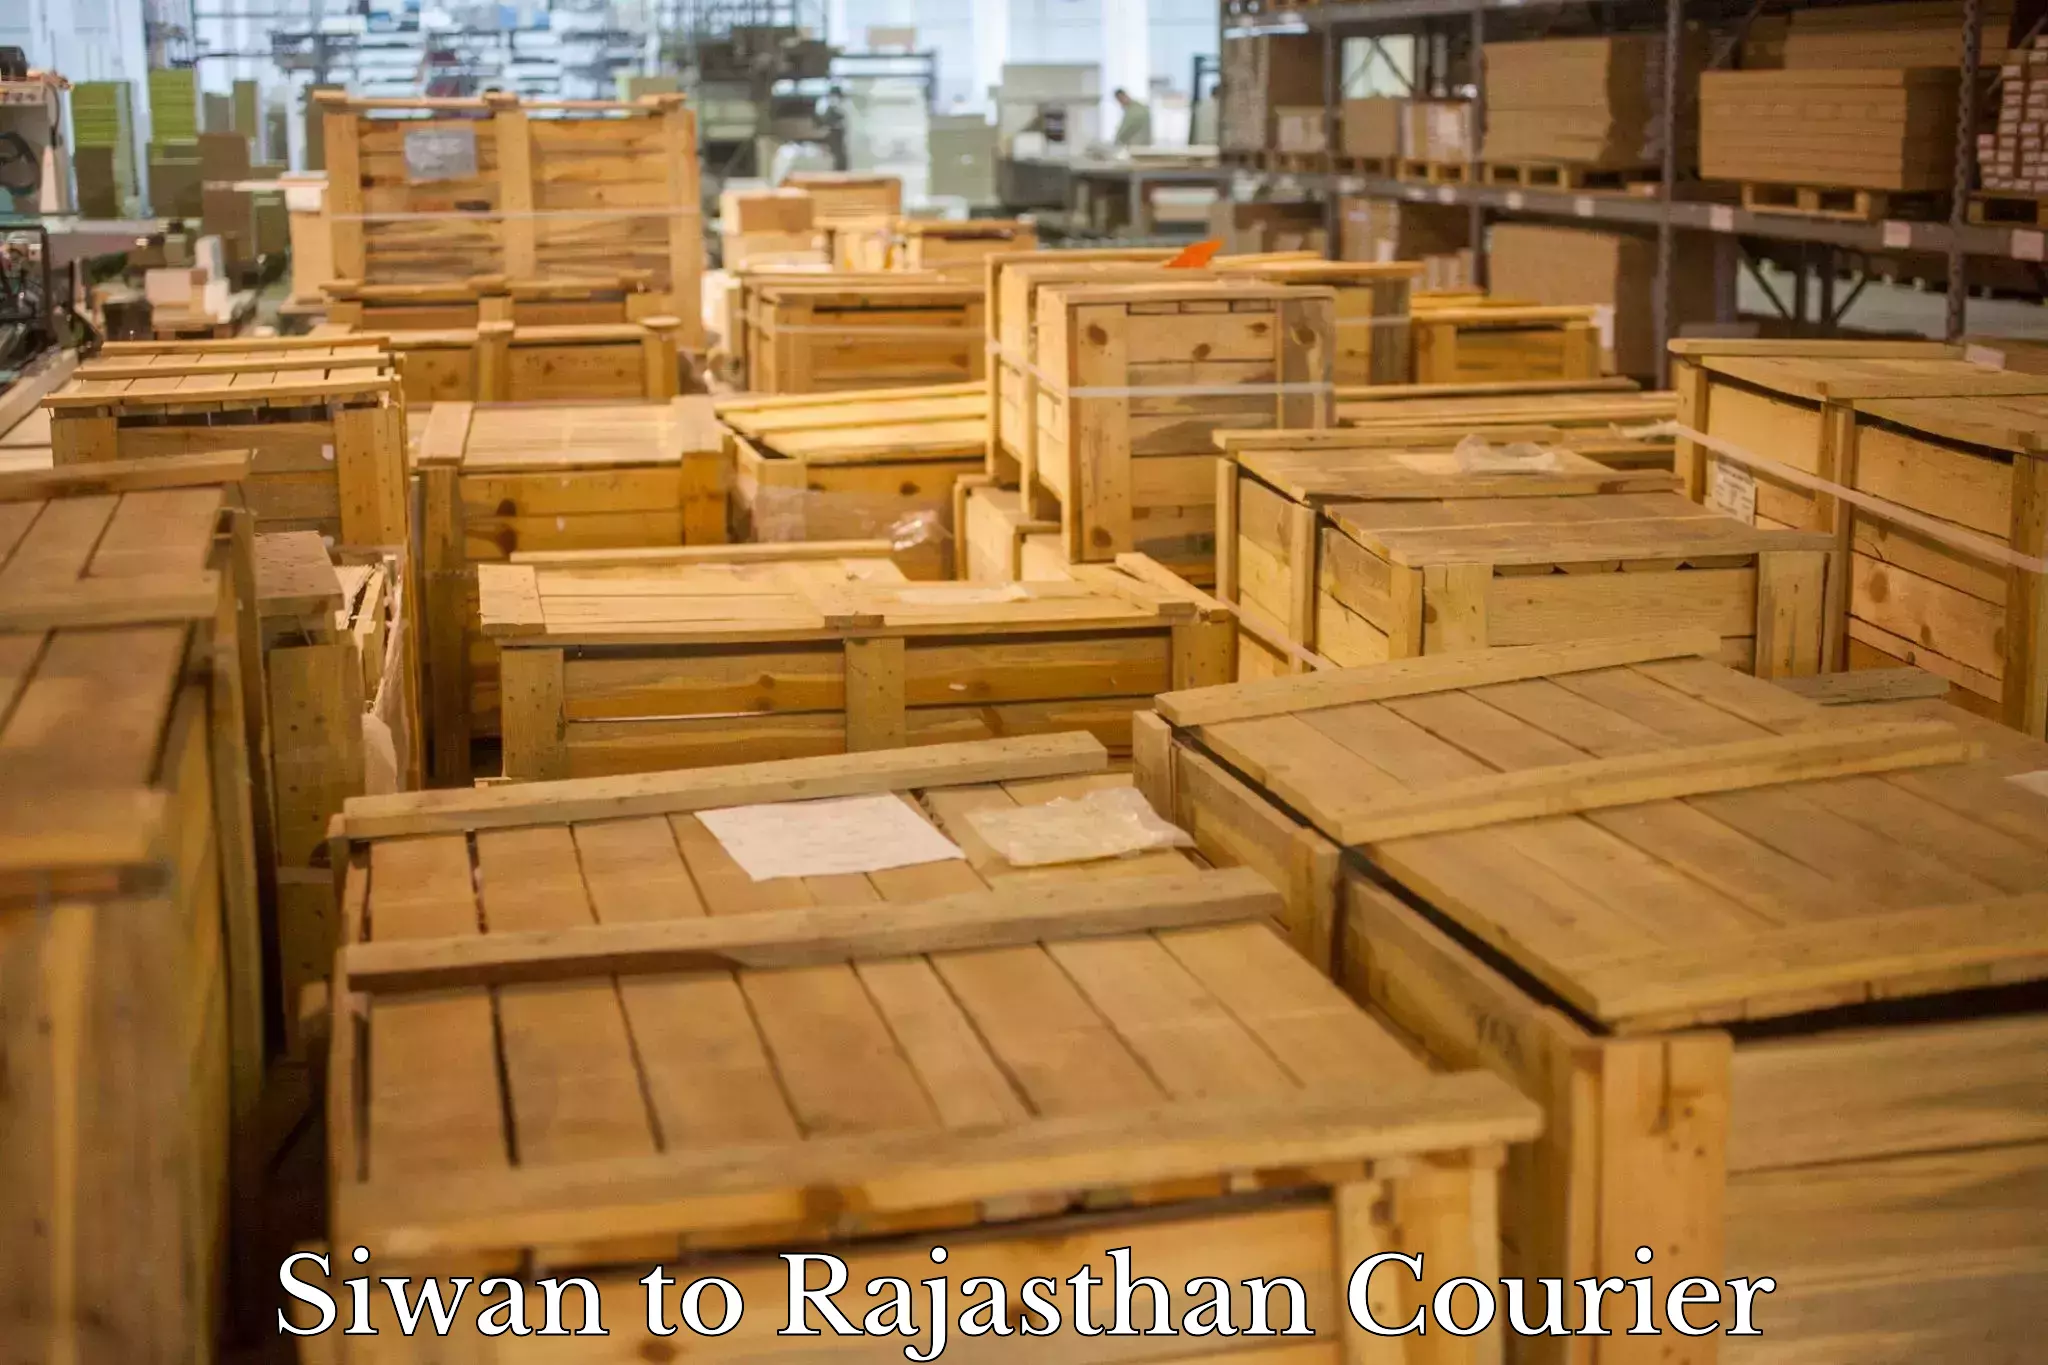 Express package handling Siwan to Rajasthan